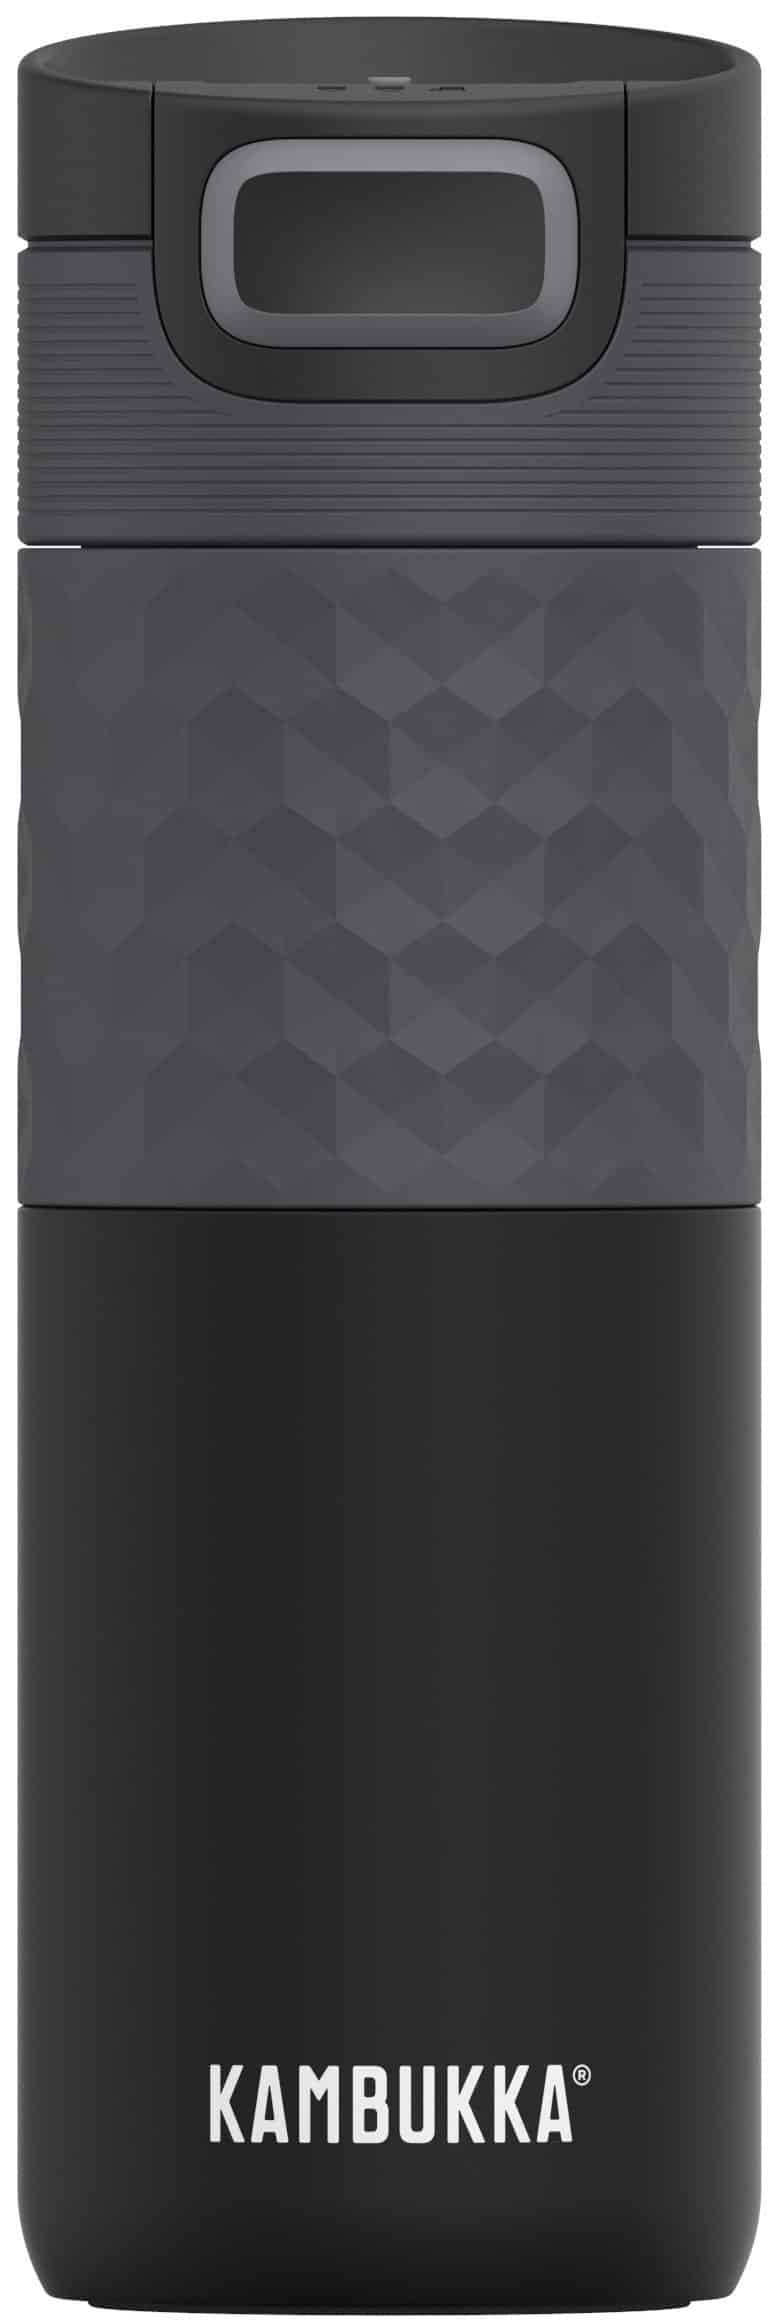 בקבוק שתיה תרמי שחור 500 מ"ל Black Steel קמבוקה￼ Kambukka Etna Grip